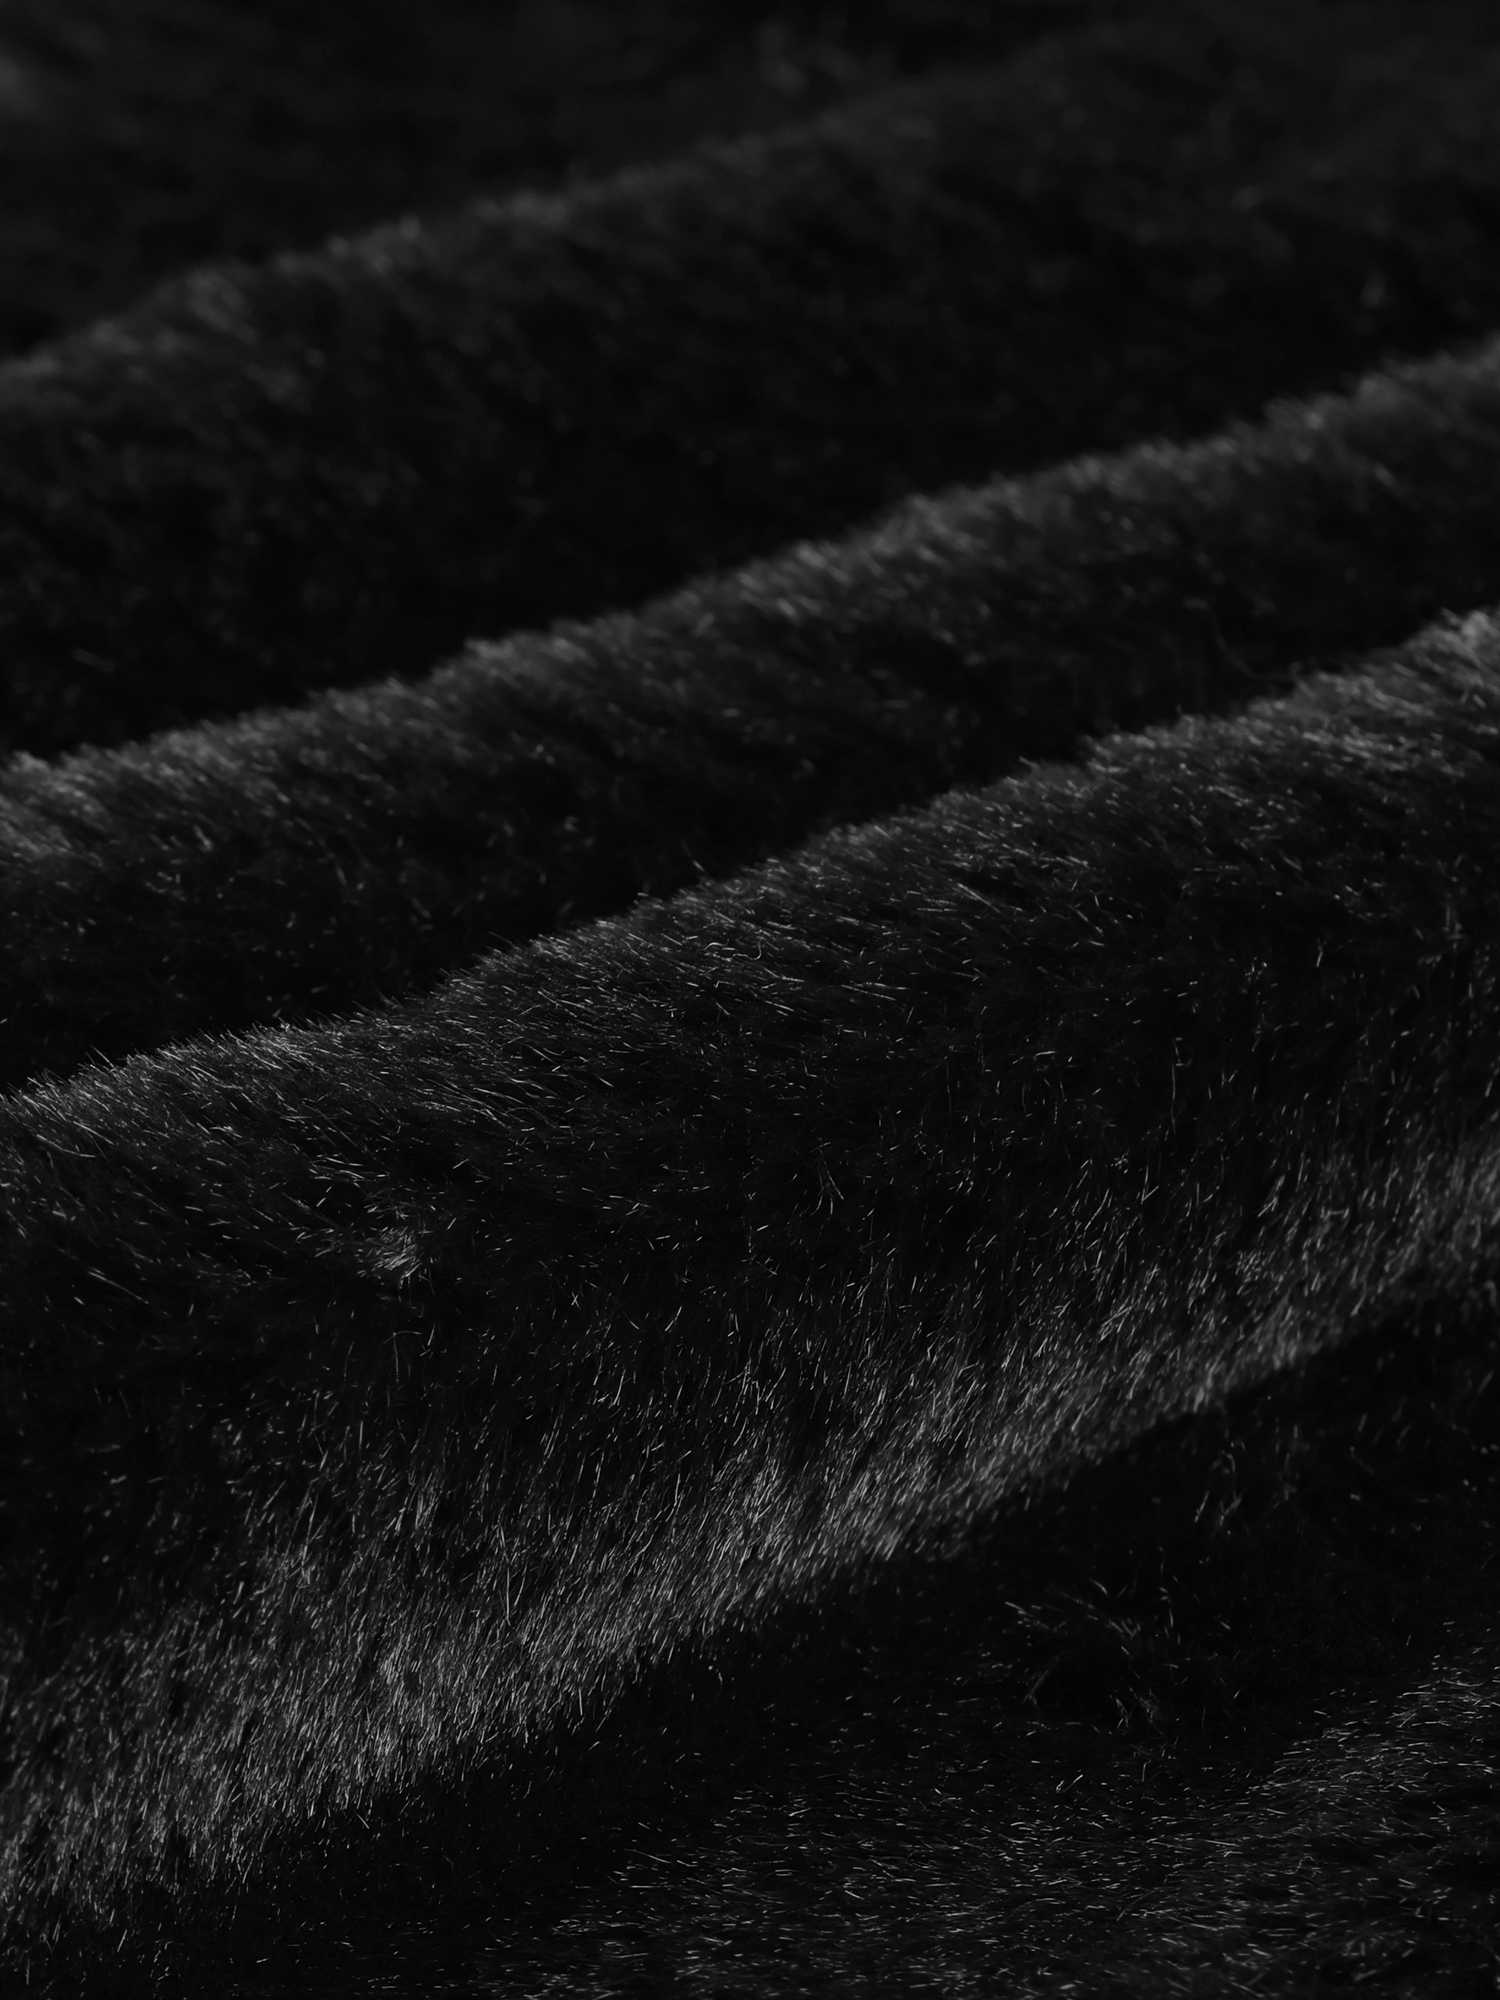 Unique Bargains Women's 2023 Fasion Winter Cropped Jacket Notch Lapel Long Sleeve Faux Fur Fluffy Coat